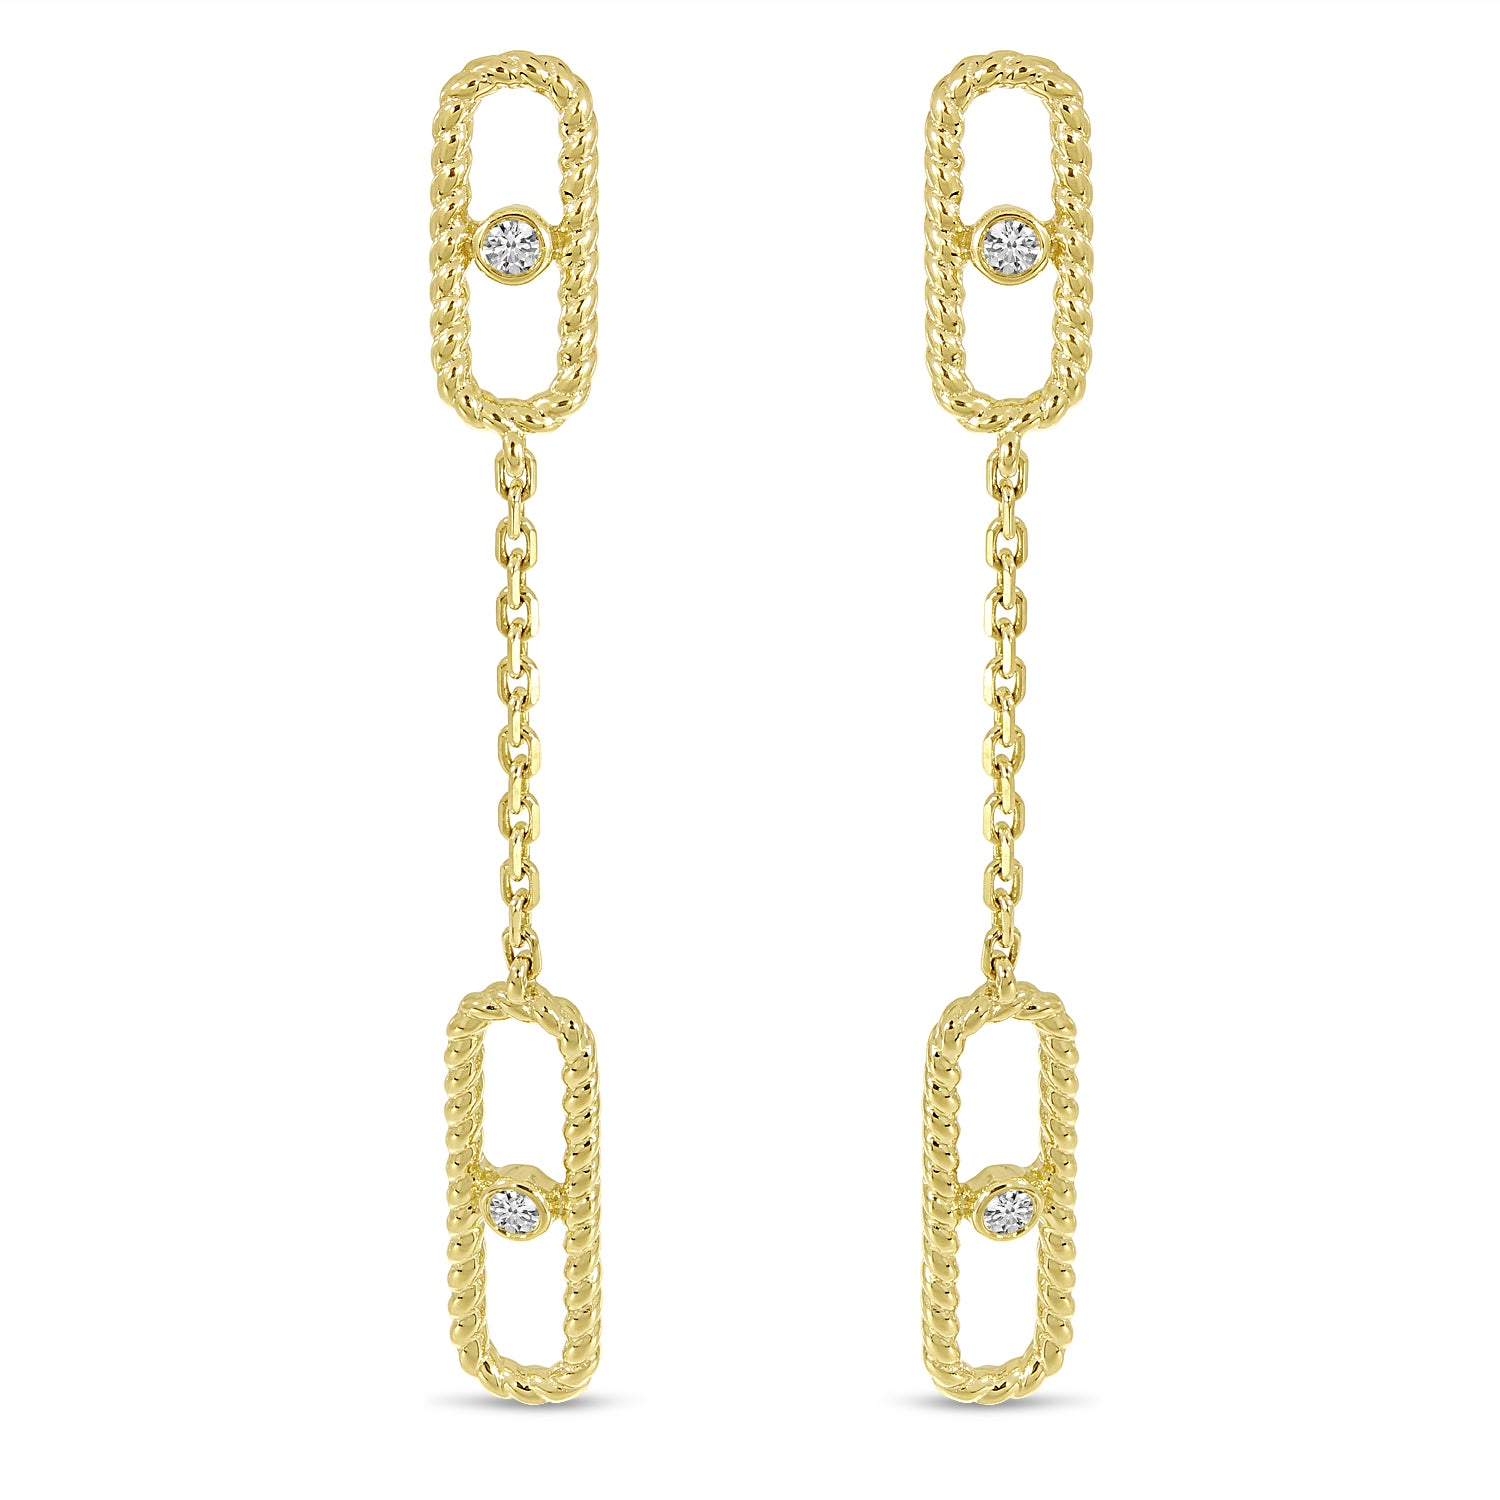 14K Yellow Gold Diamond Twist Paperclip Chain Earrings